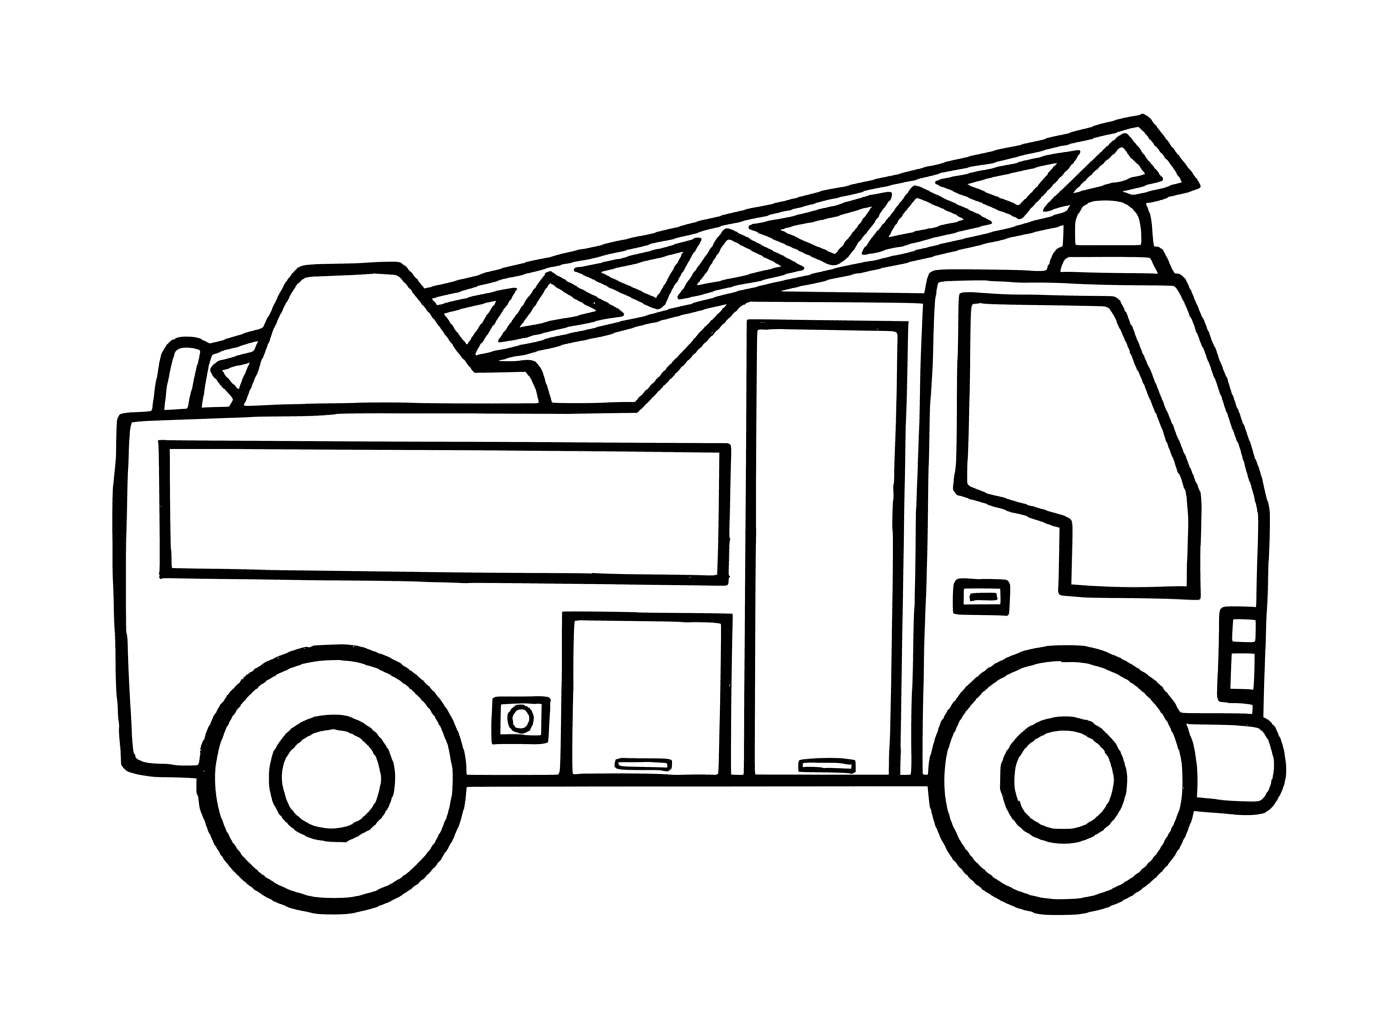  Un camion dei pompieri per l'asilo 